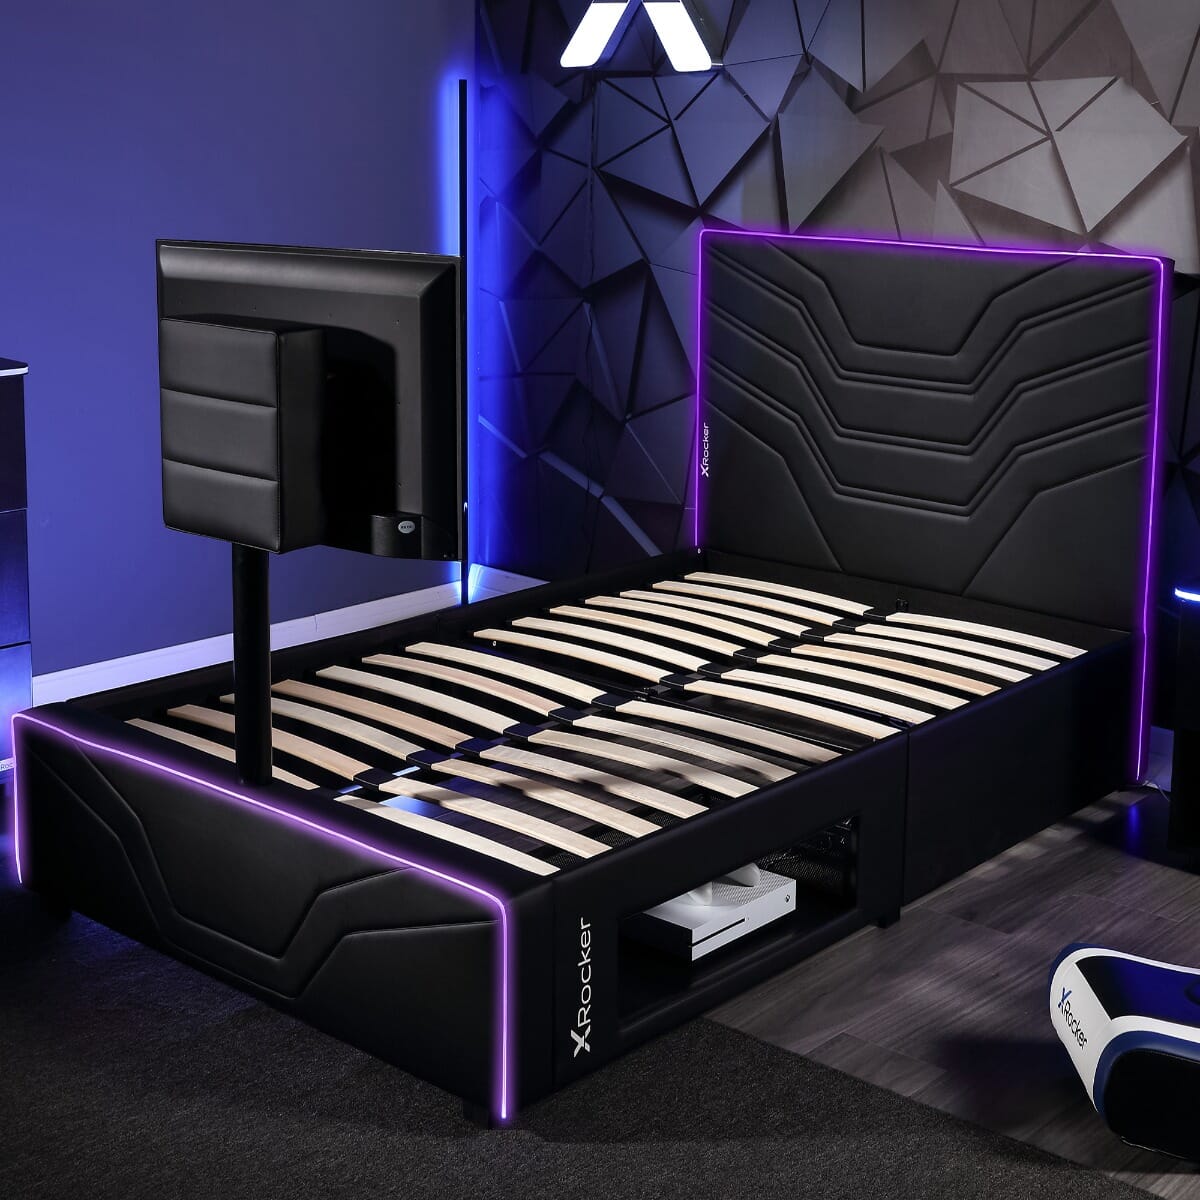 X Rocker Basecamp Single Bed TV Gaming Bed - Black